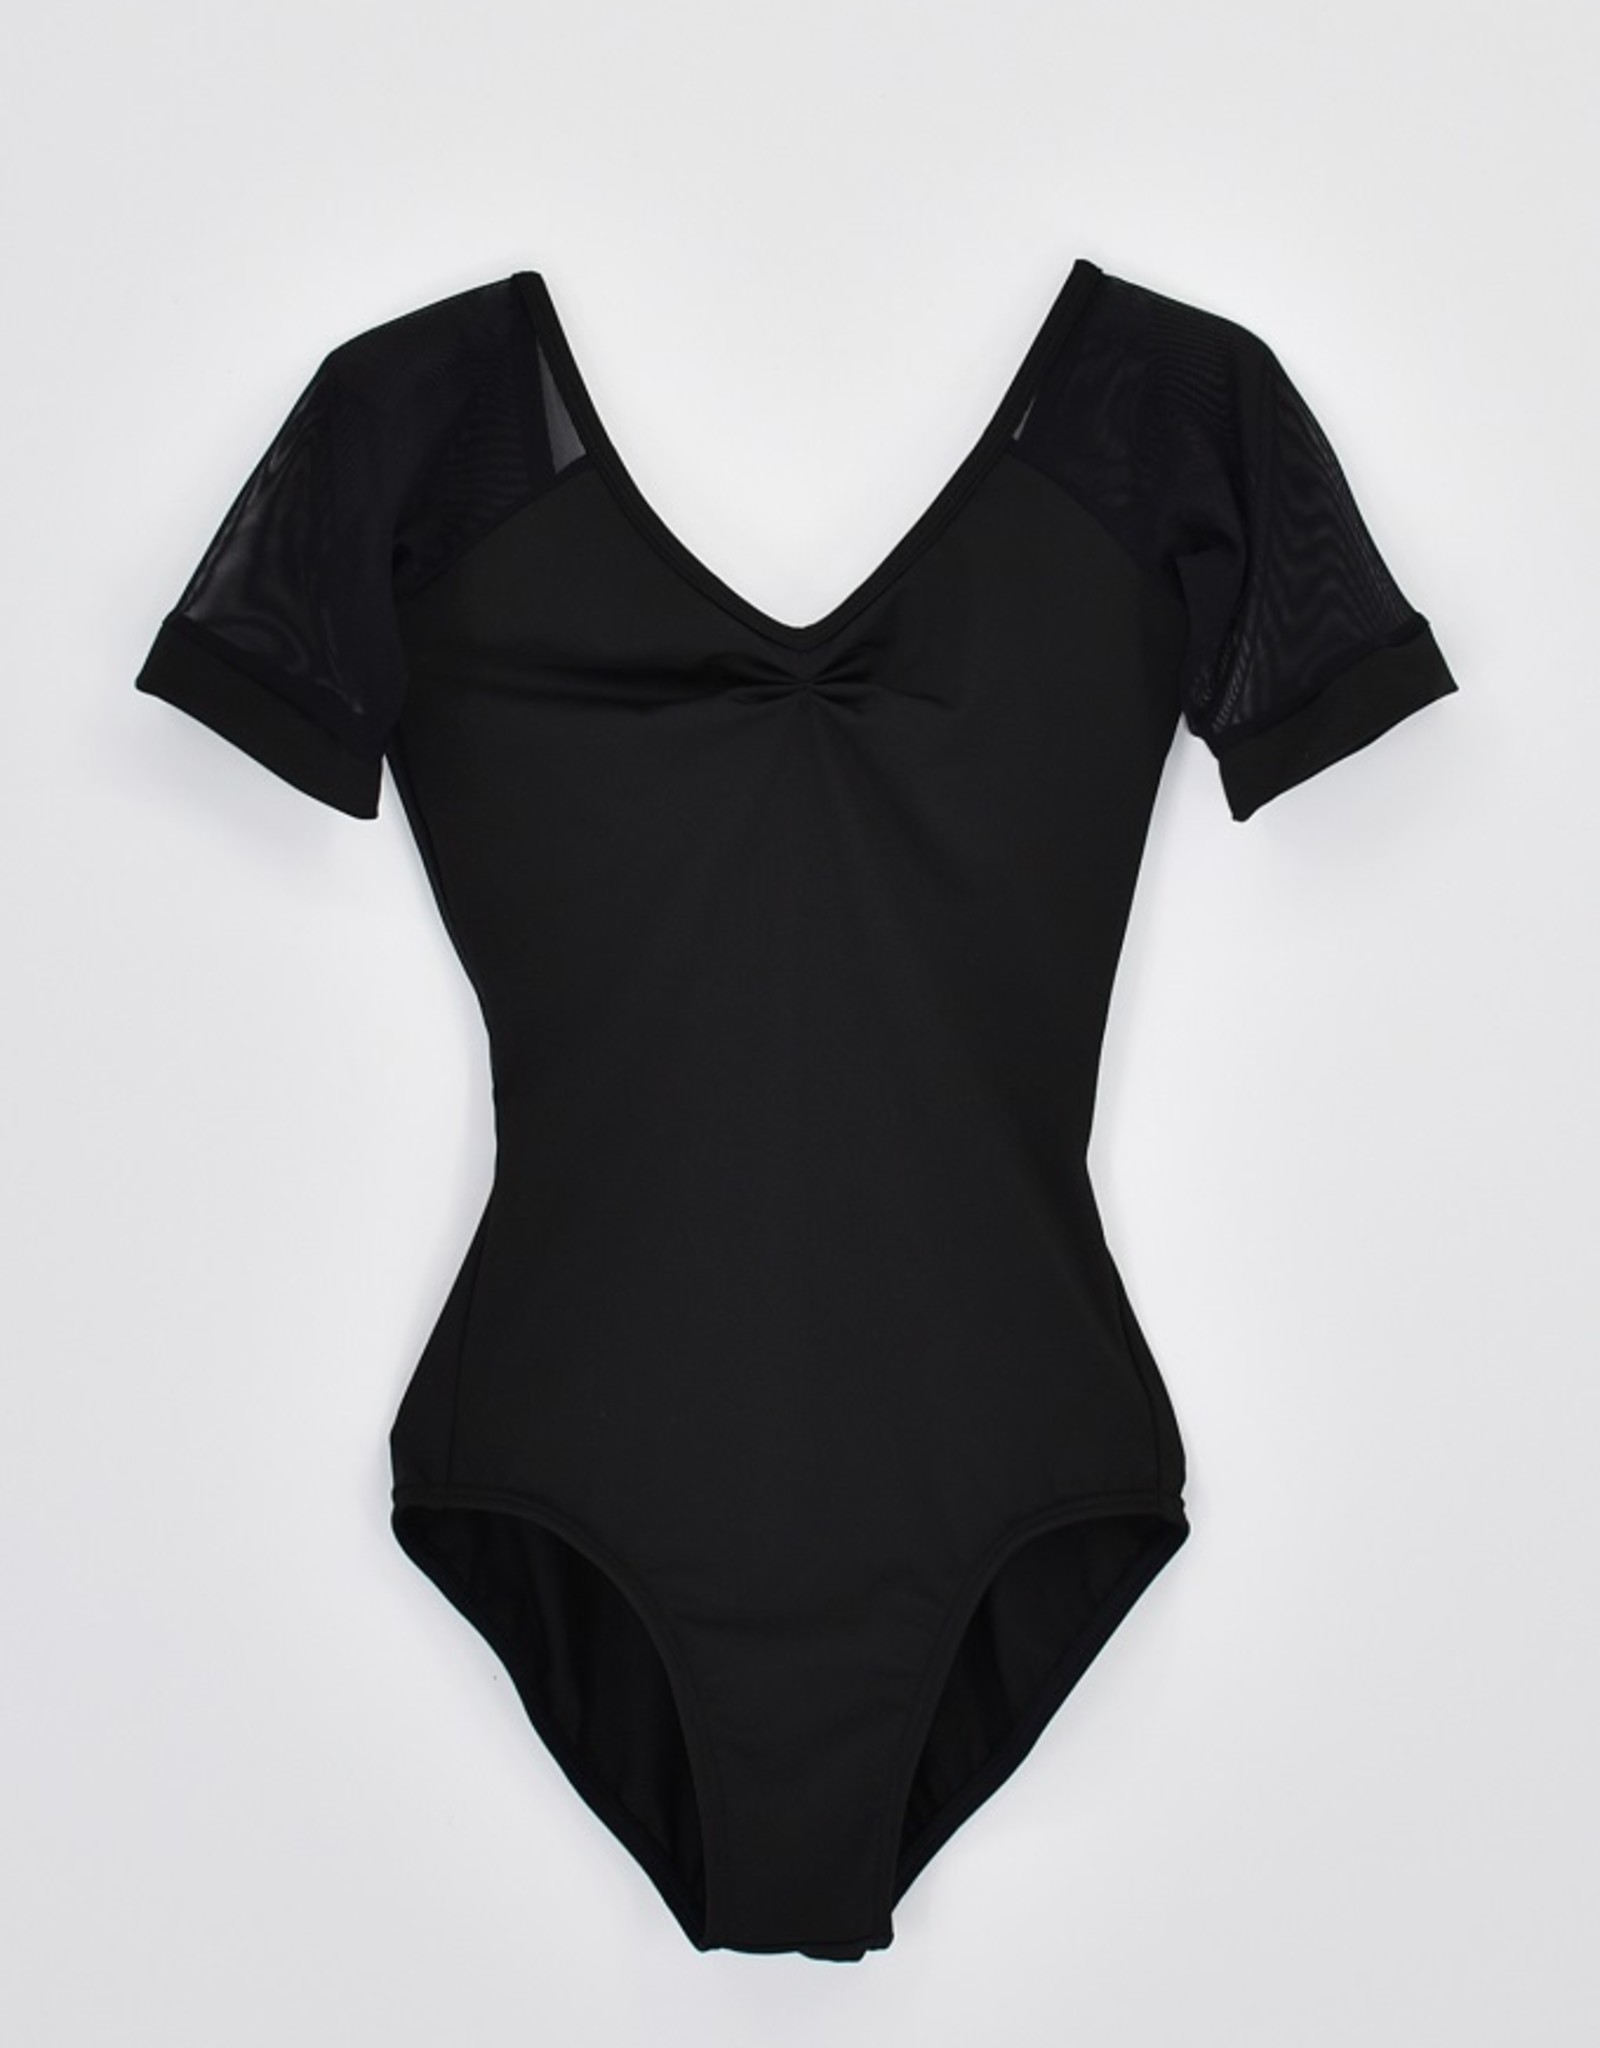 Versona  core concept shorts- black